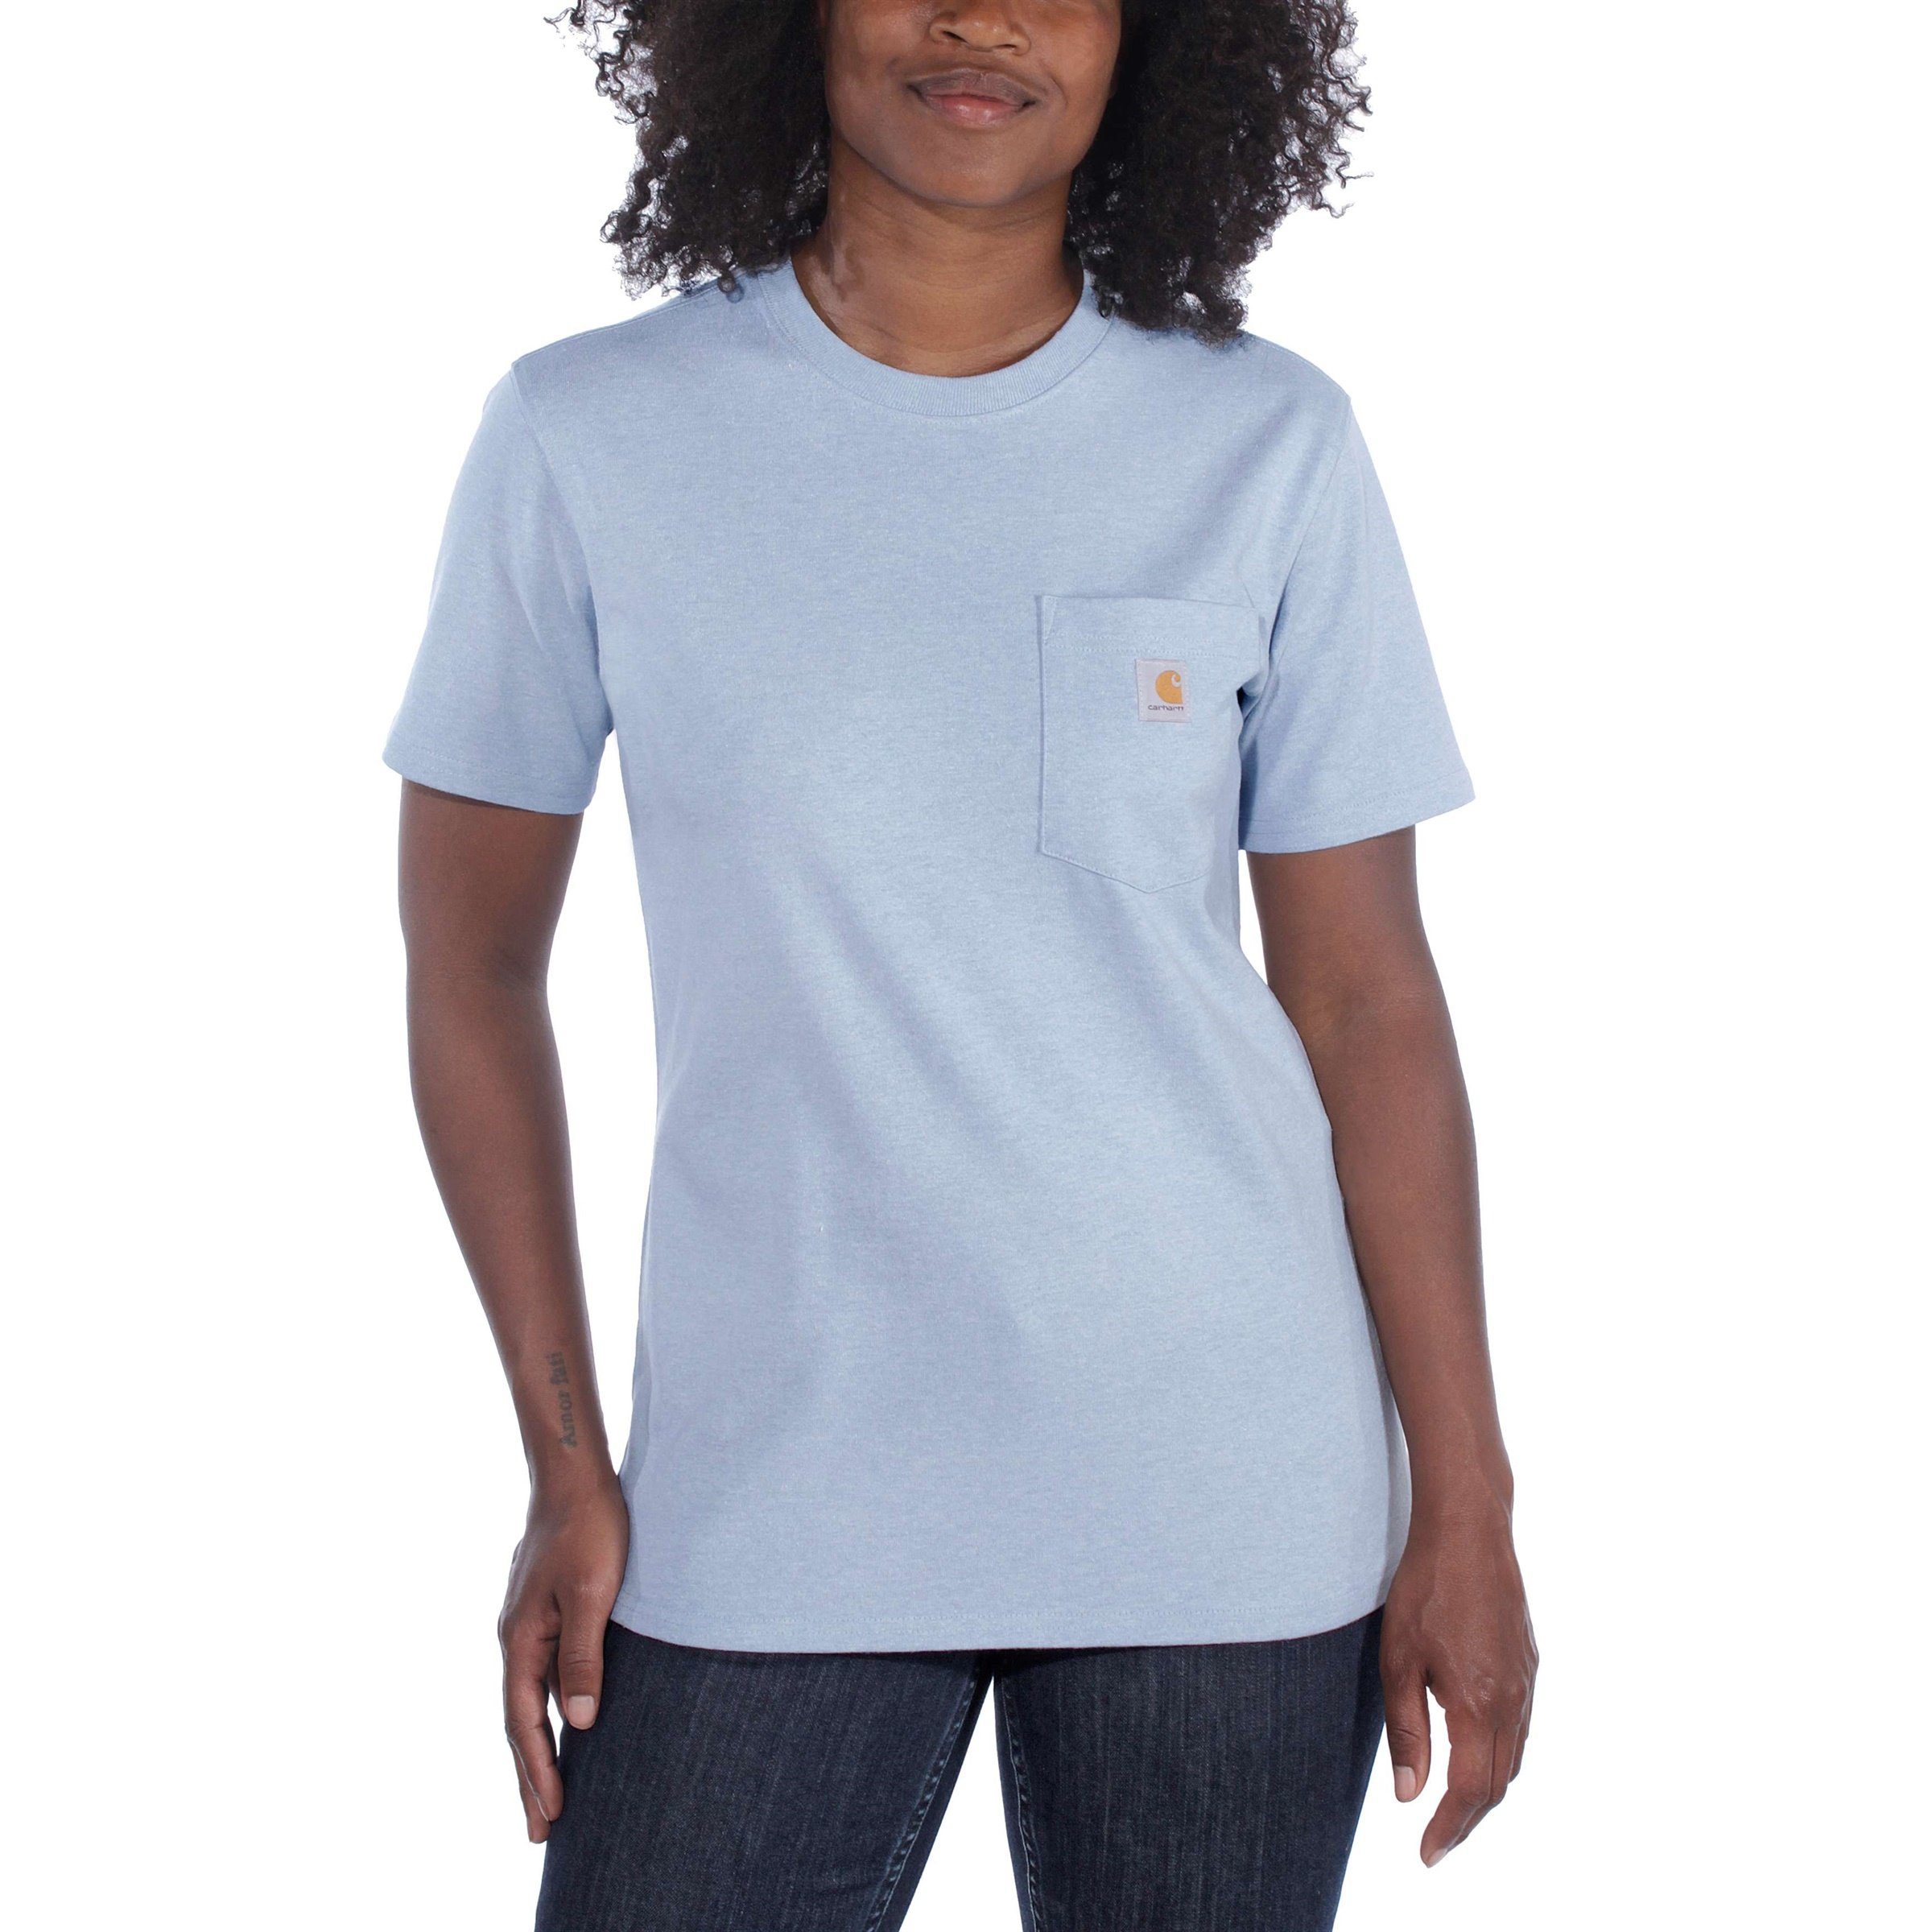 Carhartt T-Shirt Carhartt Pocket Adult Damen heather Heavyweight Loose currant T-Shirt Fit Short-Sleeve